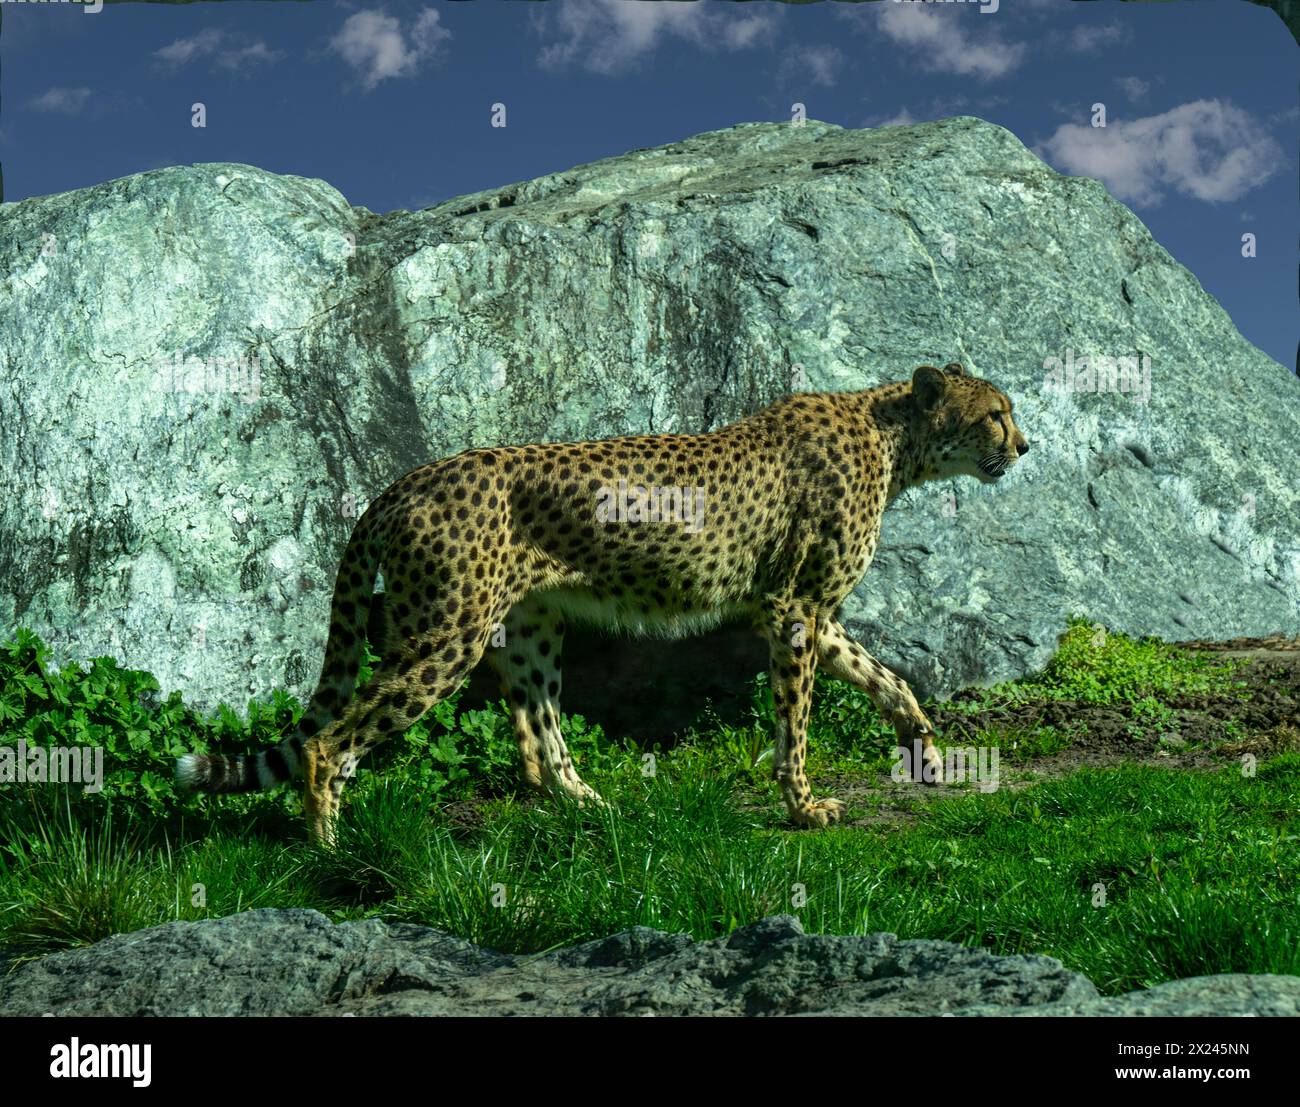 Le guépard (Acinonyx jubatus) est un grand chat et l'animal terrestre le plus rapide. Originaire d'Afrique. Banque D'Images